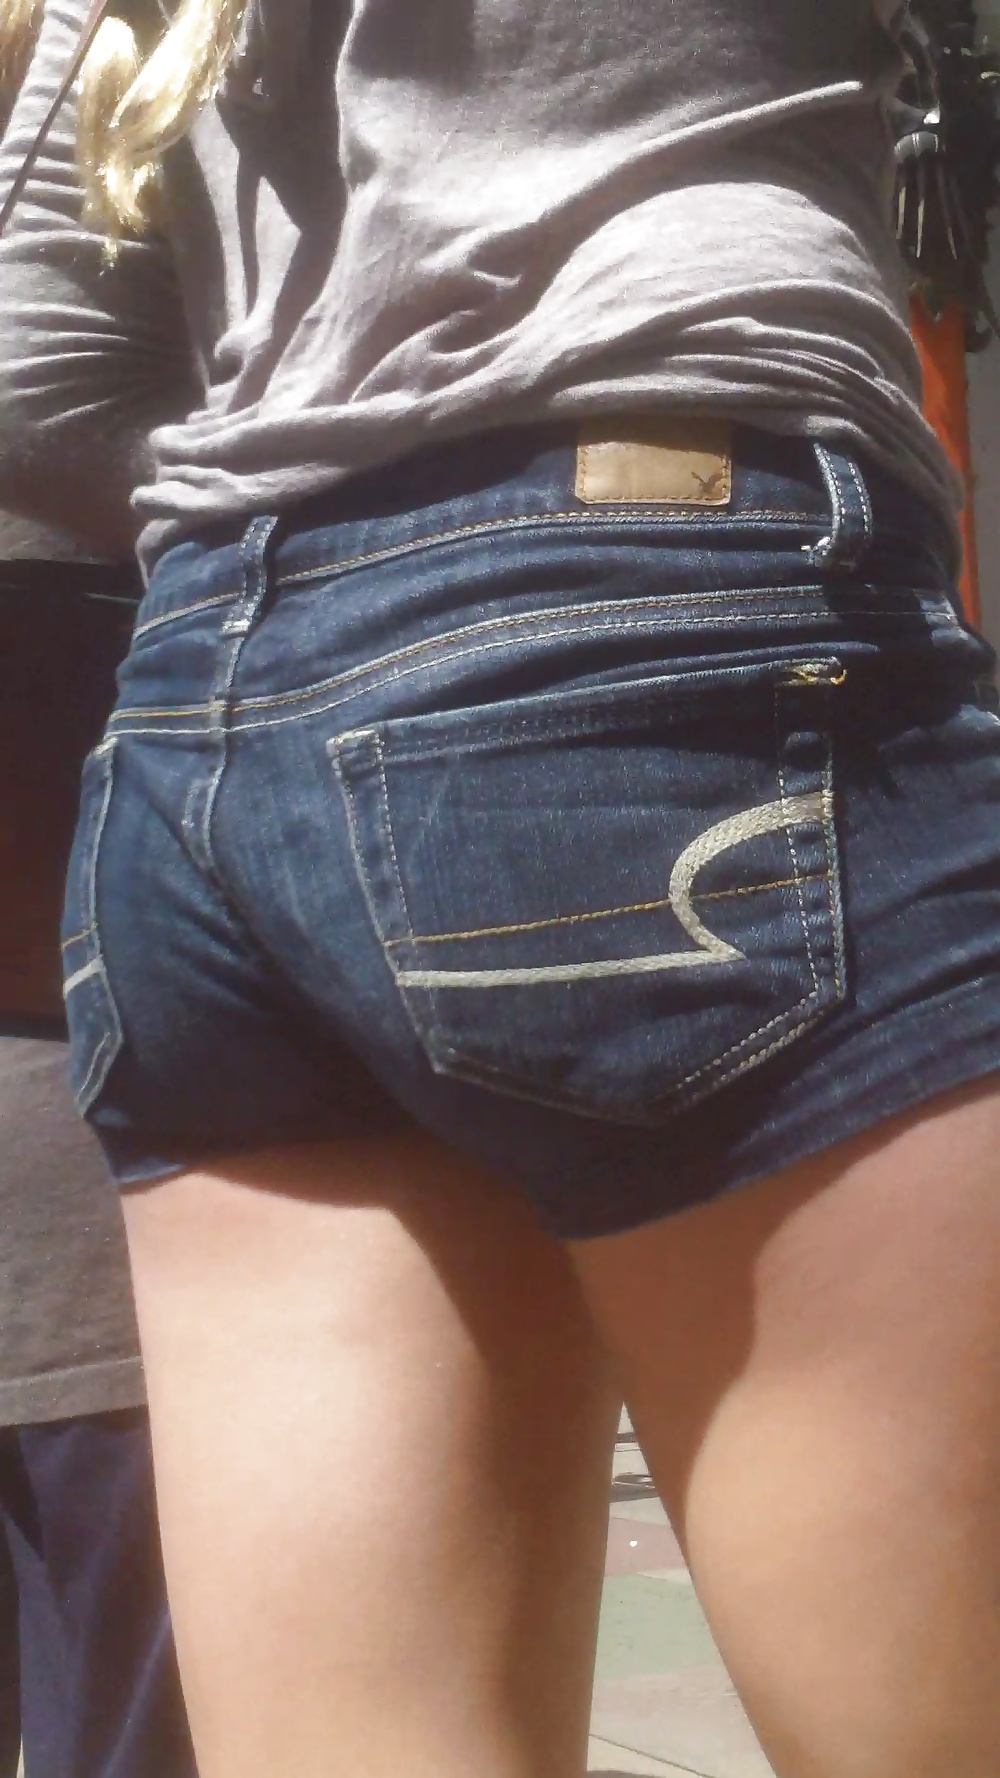 Popular teen girls ass & butt in jeans part 3 #25400548